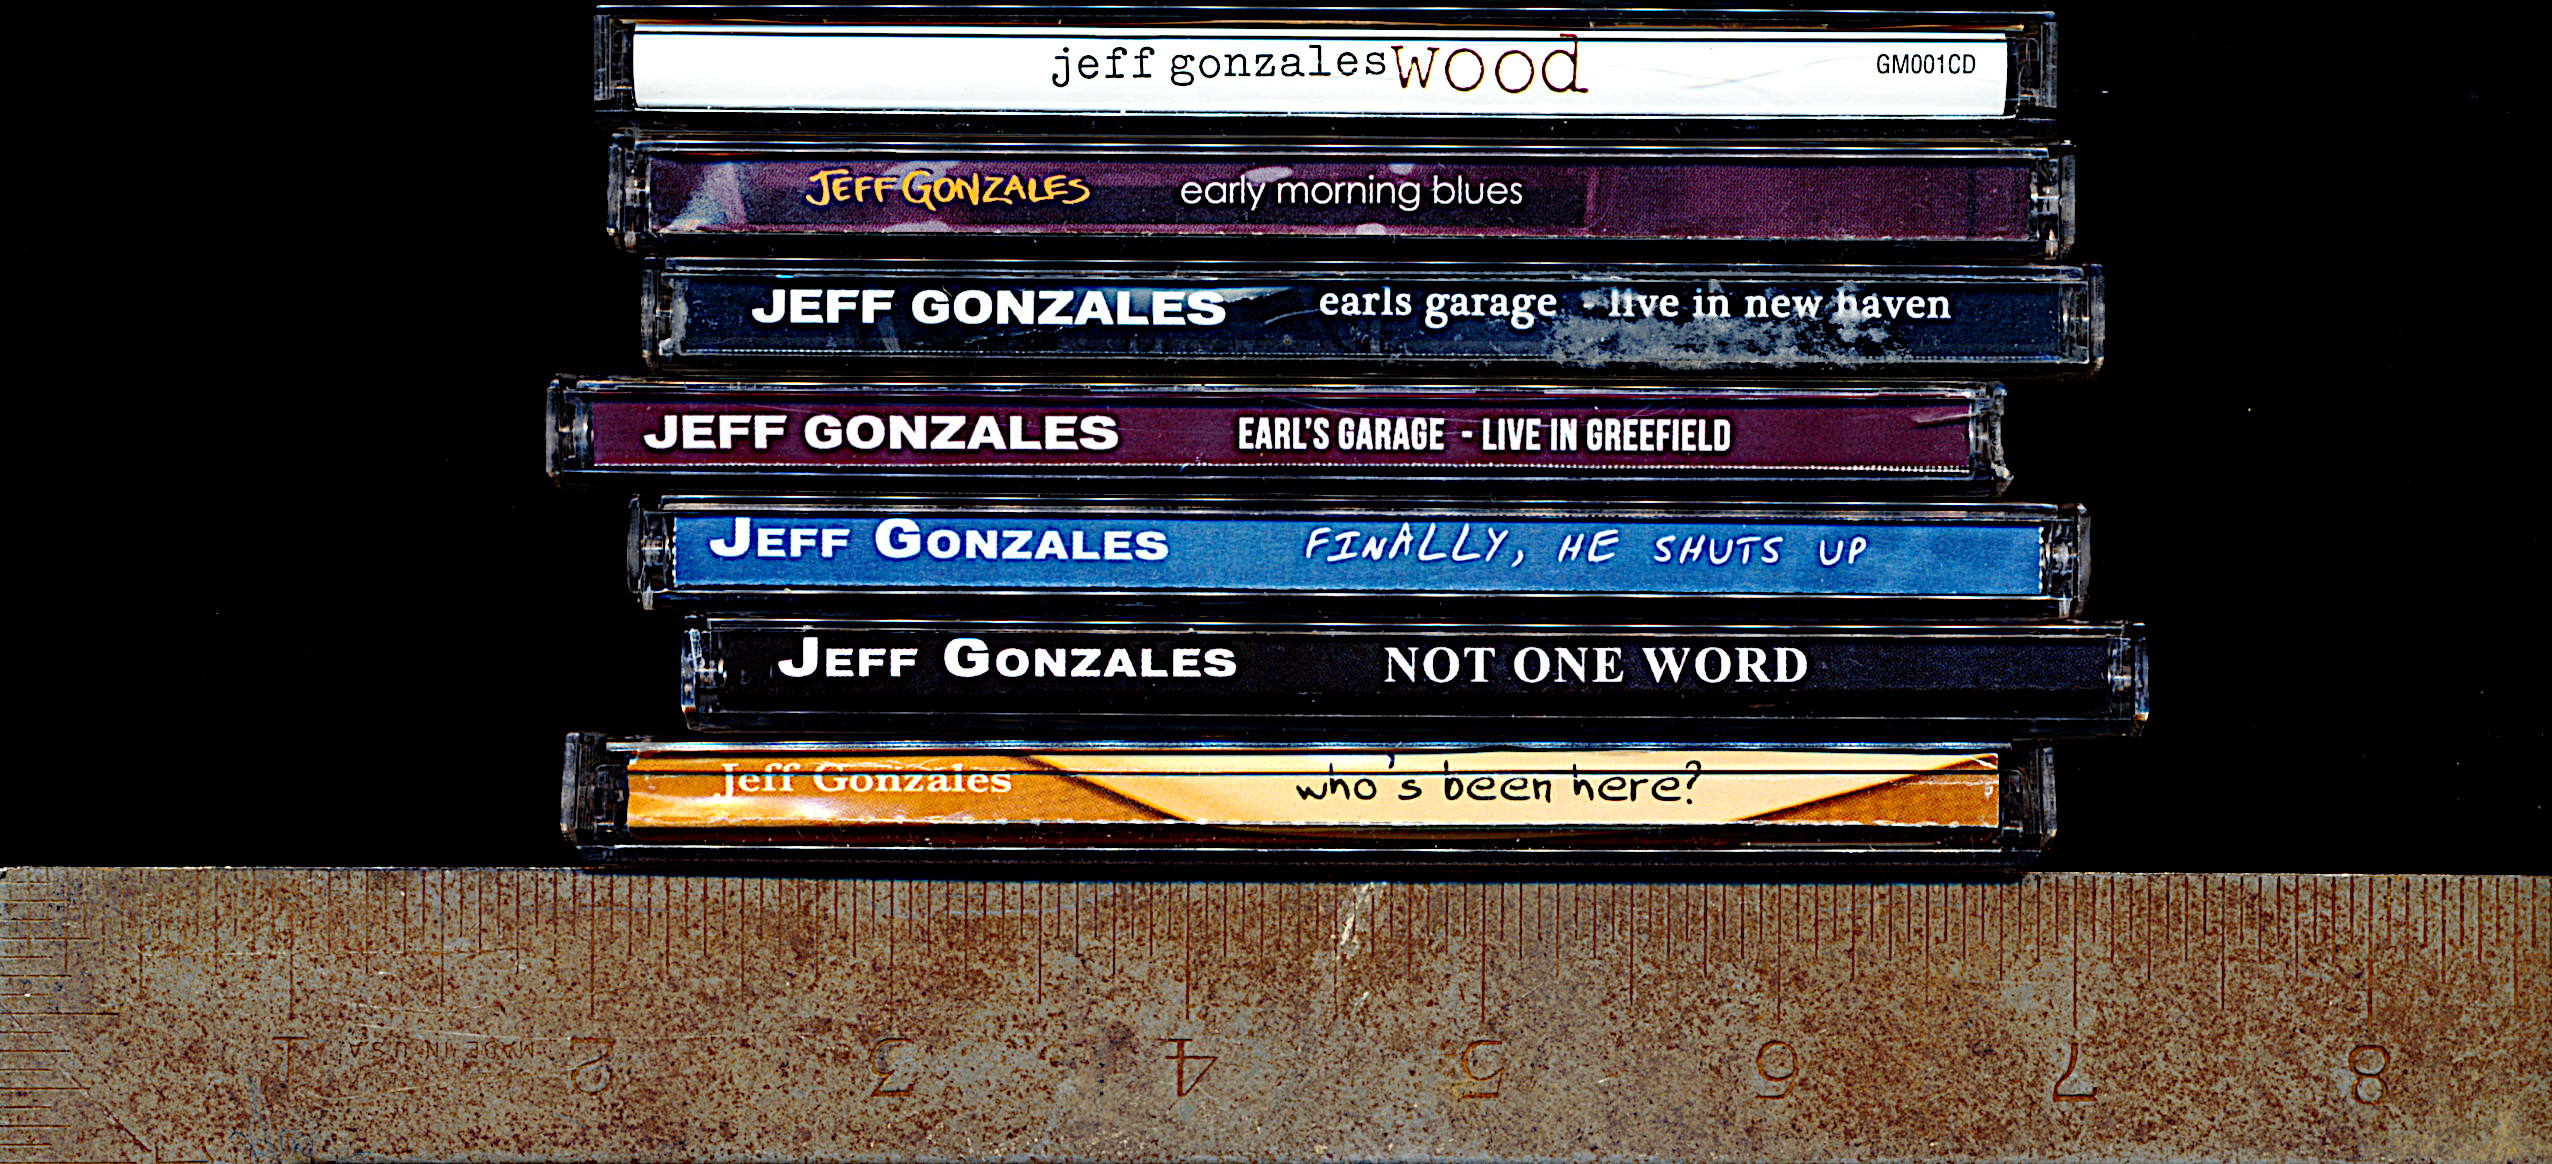 Jeff solo CDs